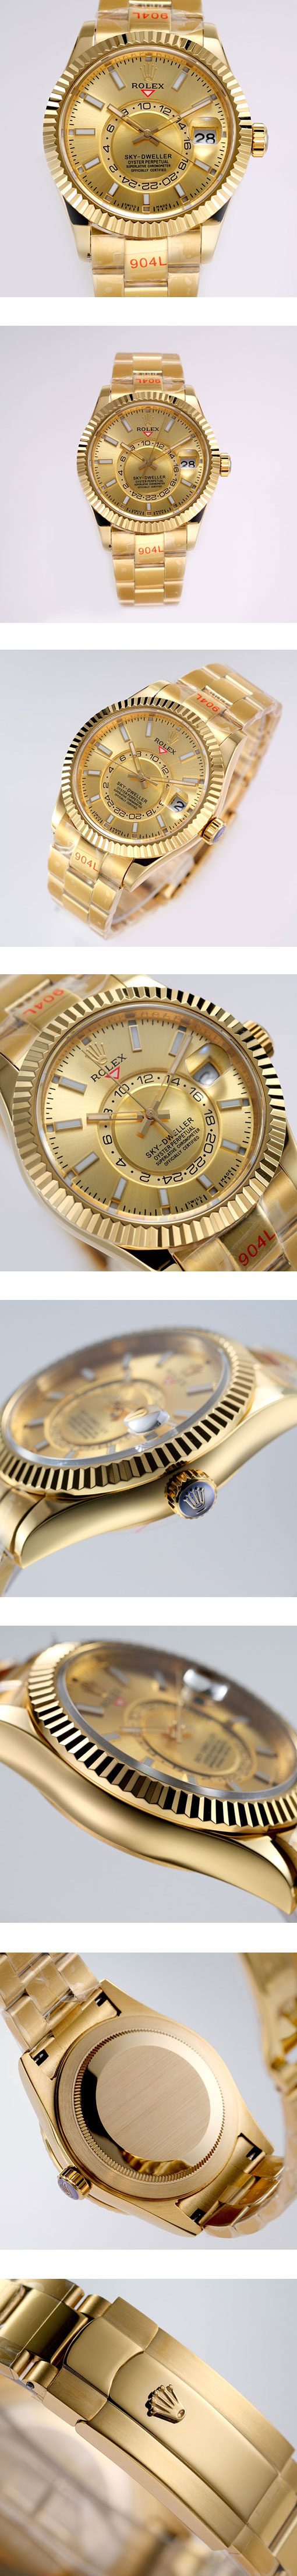 ロレックス レプリカ時計 42mm スカイドゥエラー M326938-0003 ゴールド 9001ムーブメントを搭載!